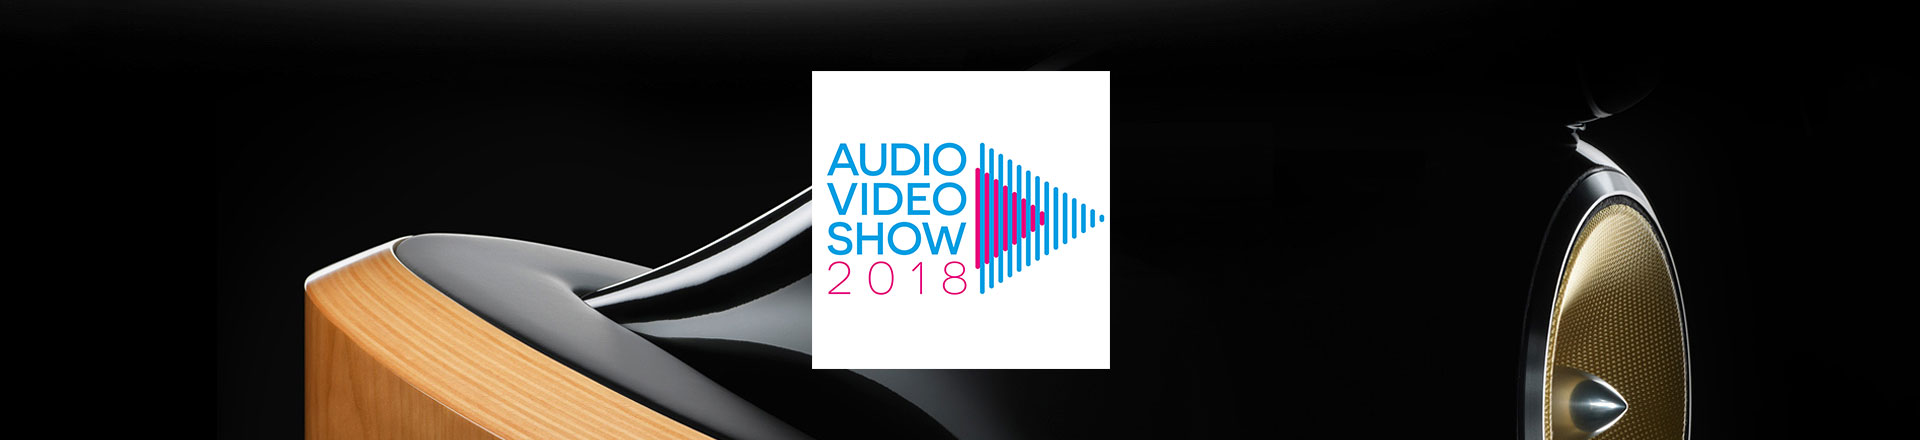 Rusza Audio Show 2018 - Wystawa sprzętu audio-video oraz kina domowego